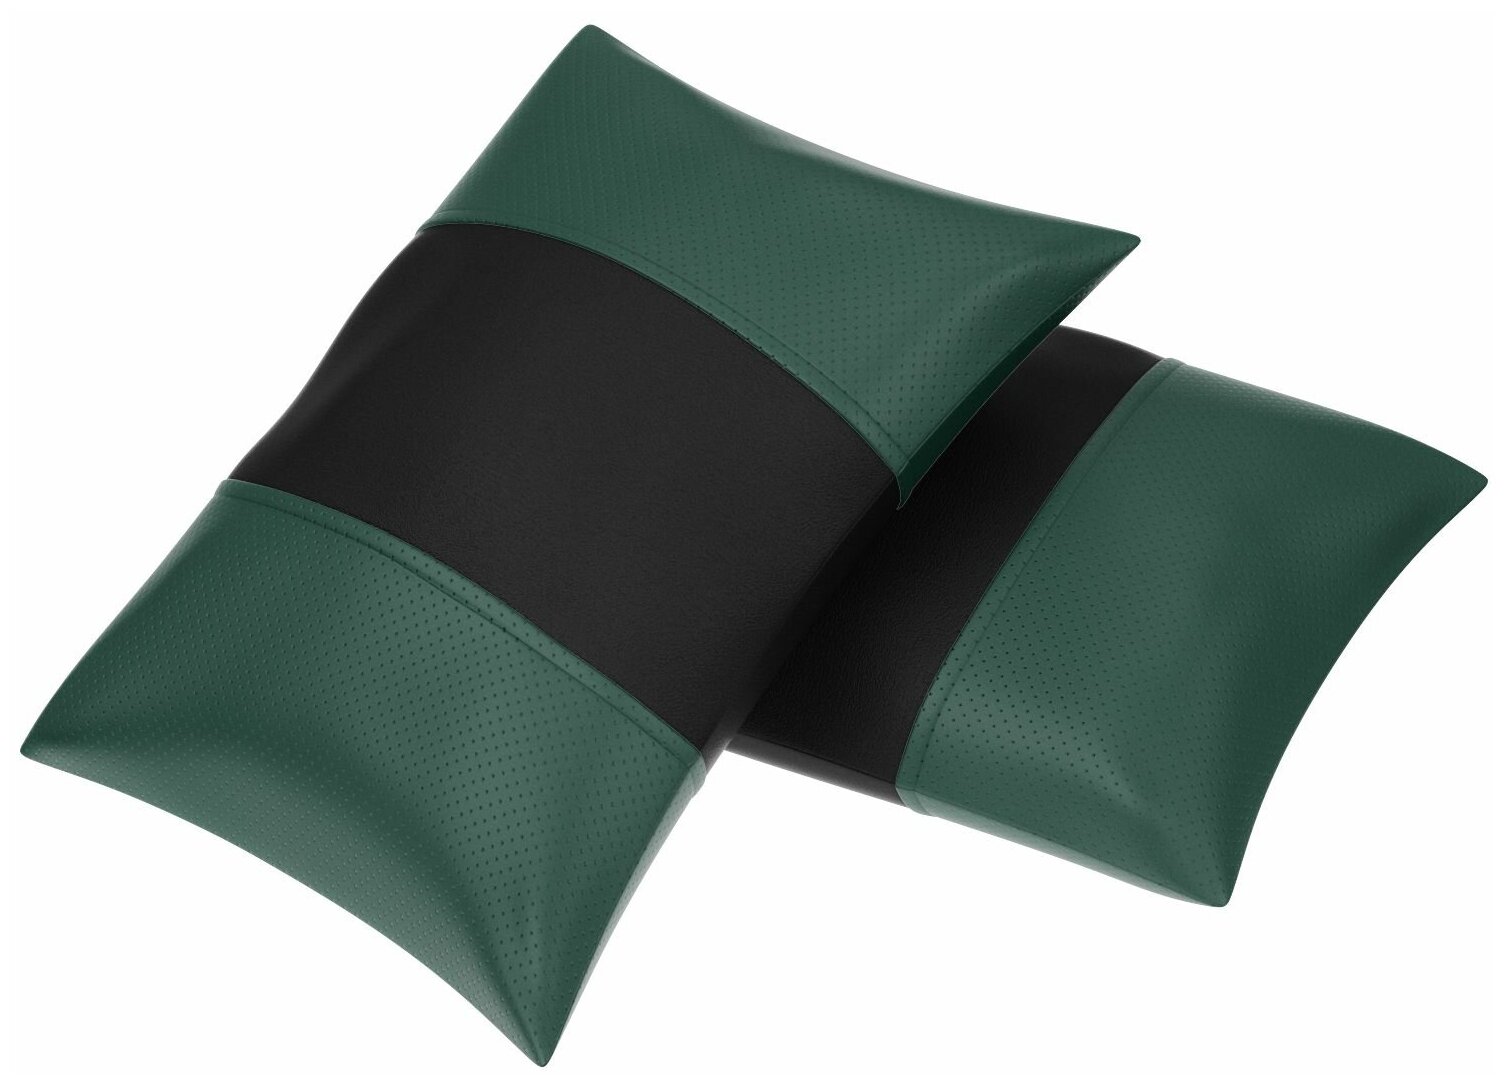 Автомобильная подушка для Opel Vectra B (Опель Вектра B). Экокожа. Середина: черная гладкая экокожа. Боковины: зеленая экокожа с перфорацией. 1 шт.